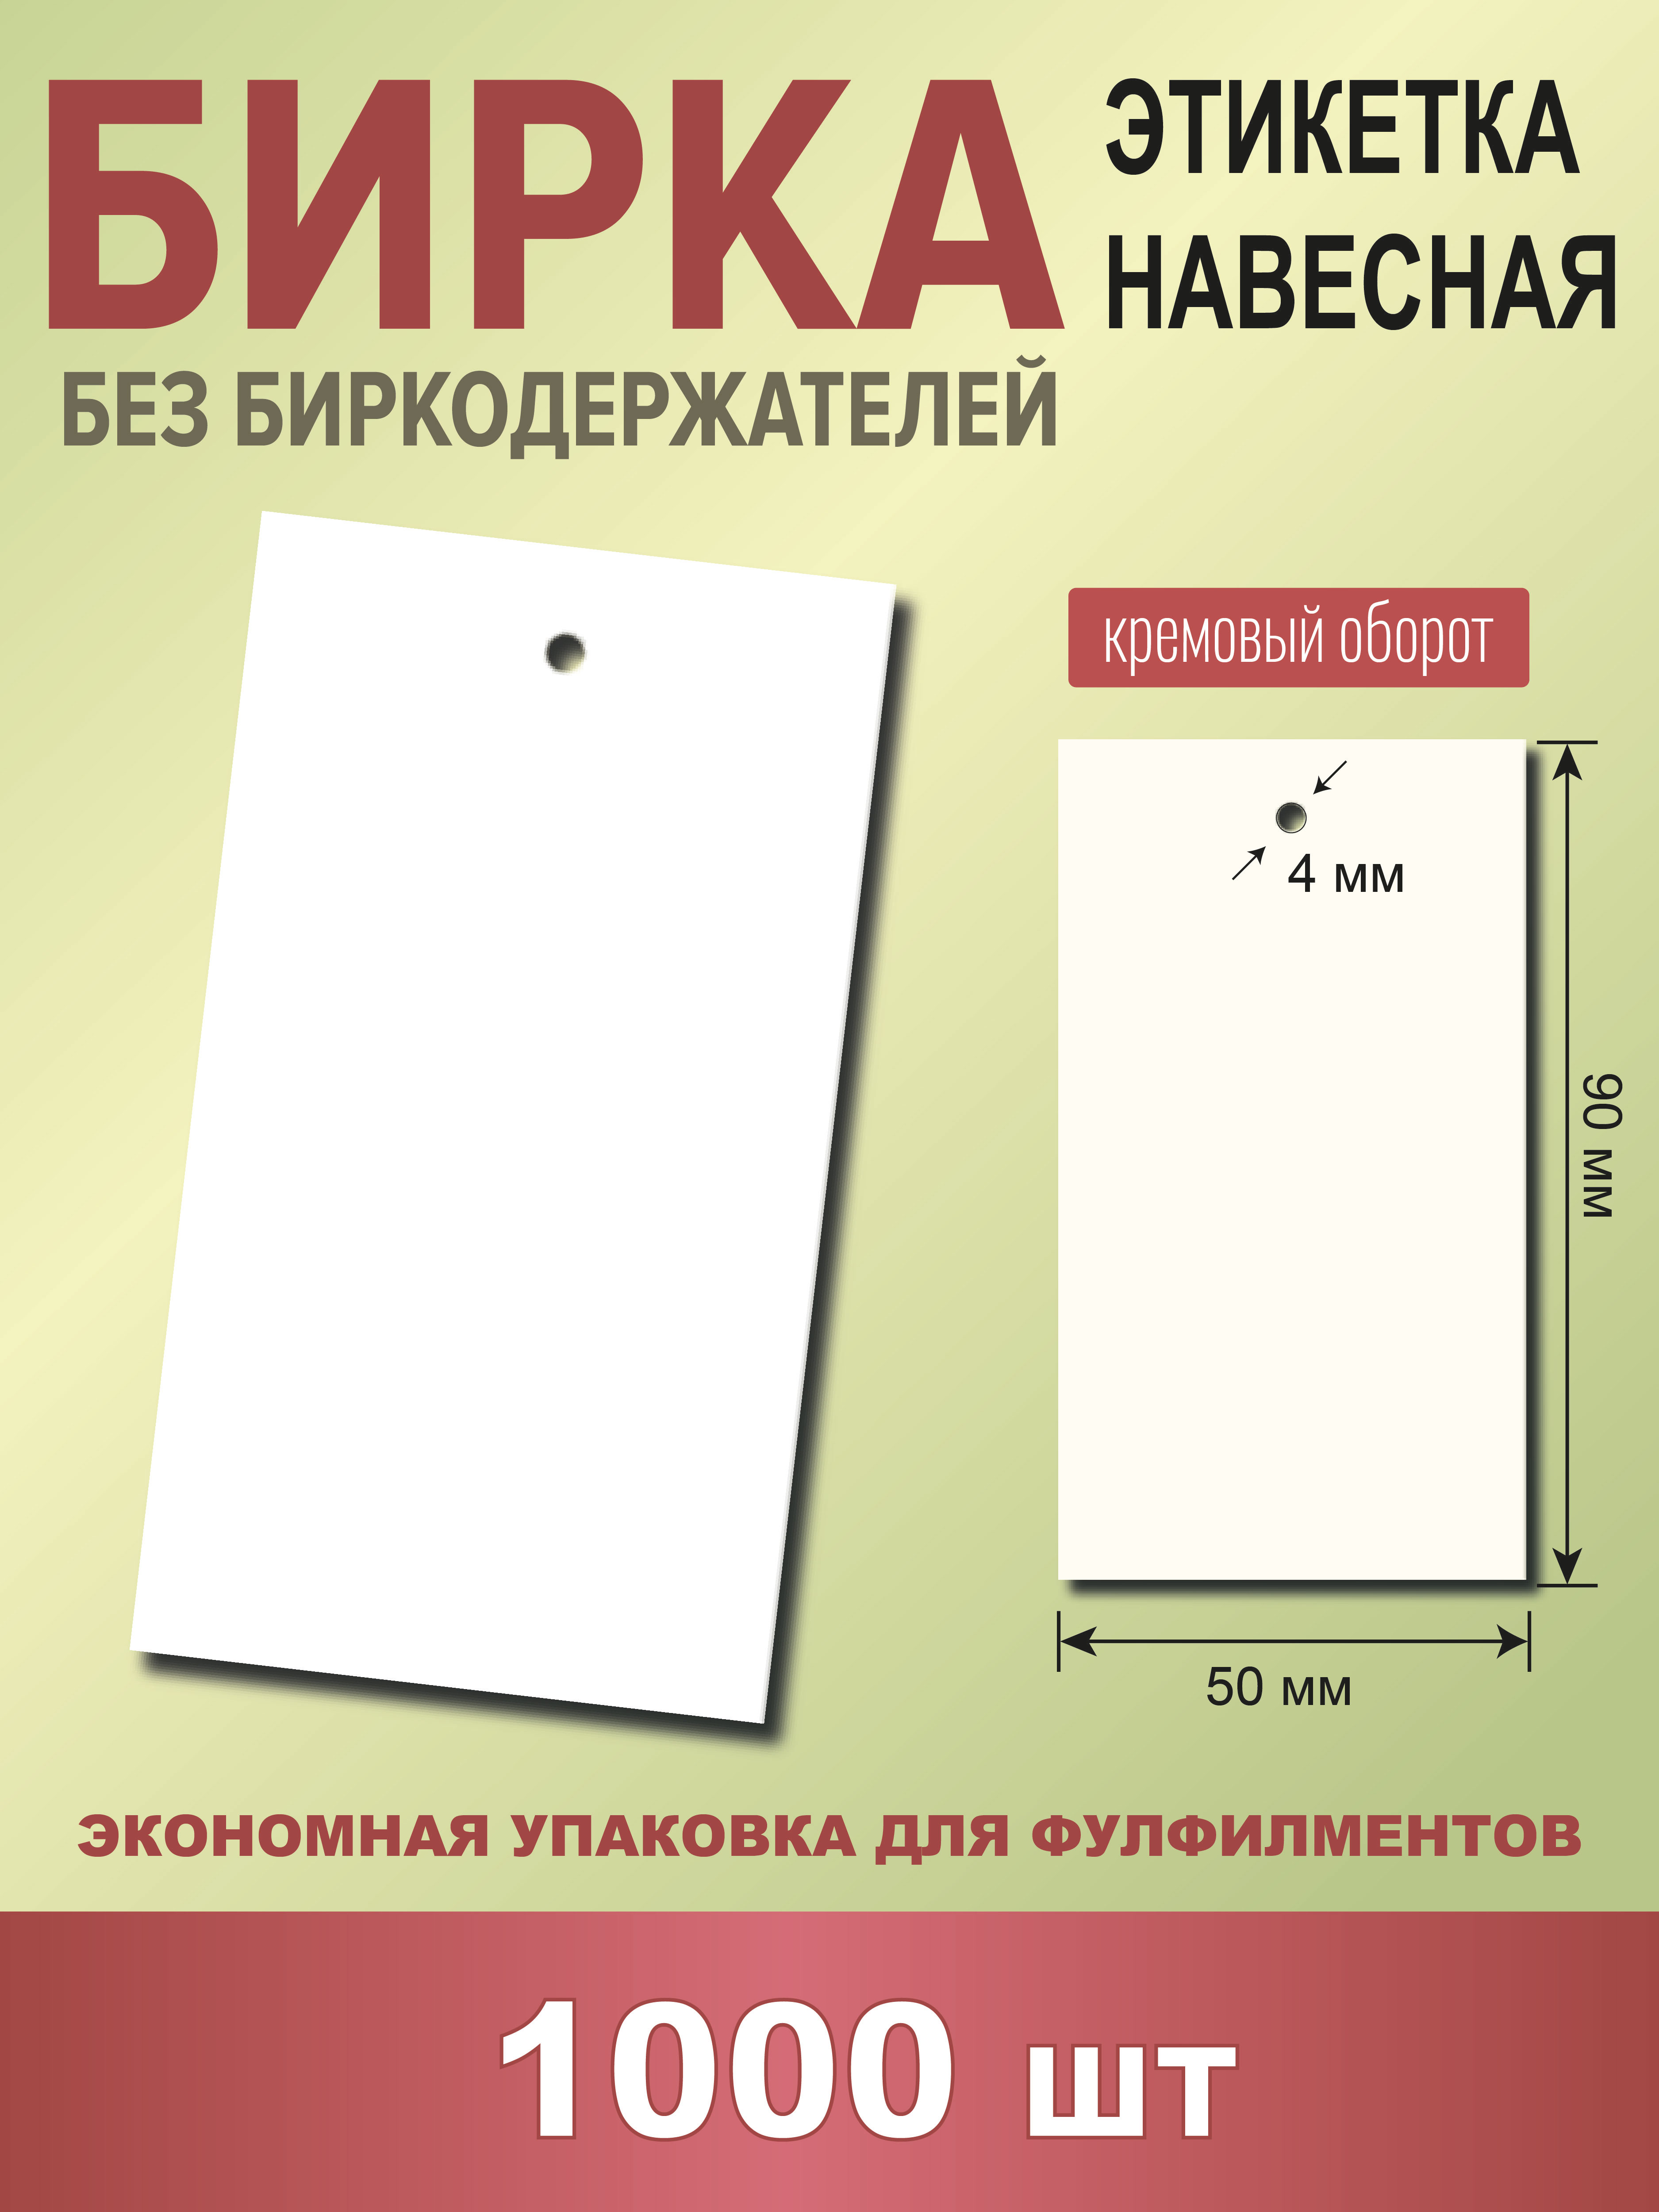 Бирка для маркировки товара УпаковкаТУТ Б00_1000_белая, 50х90 мм, 1000 шт в упаковке